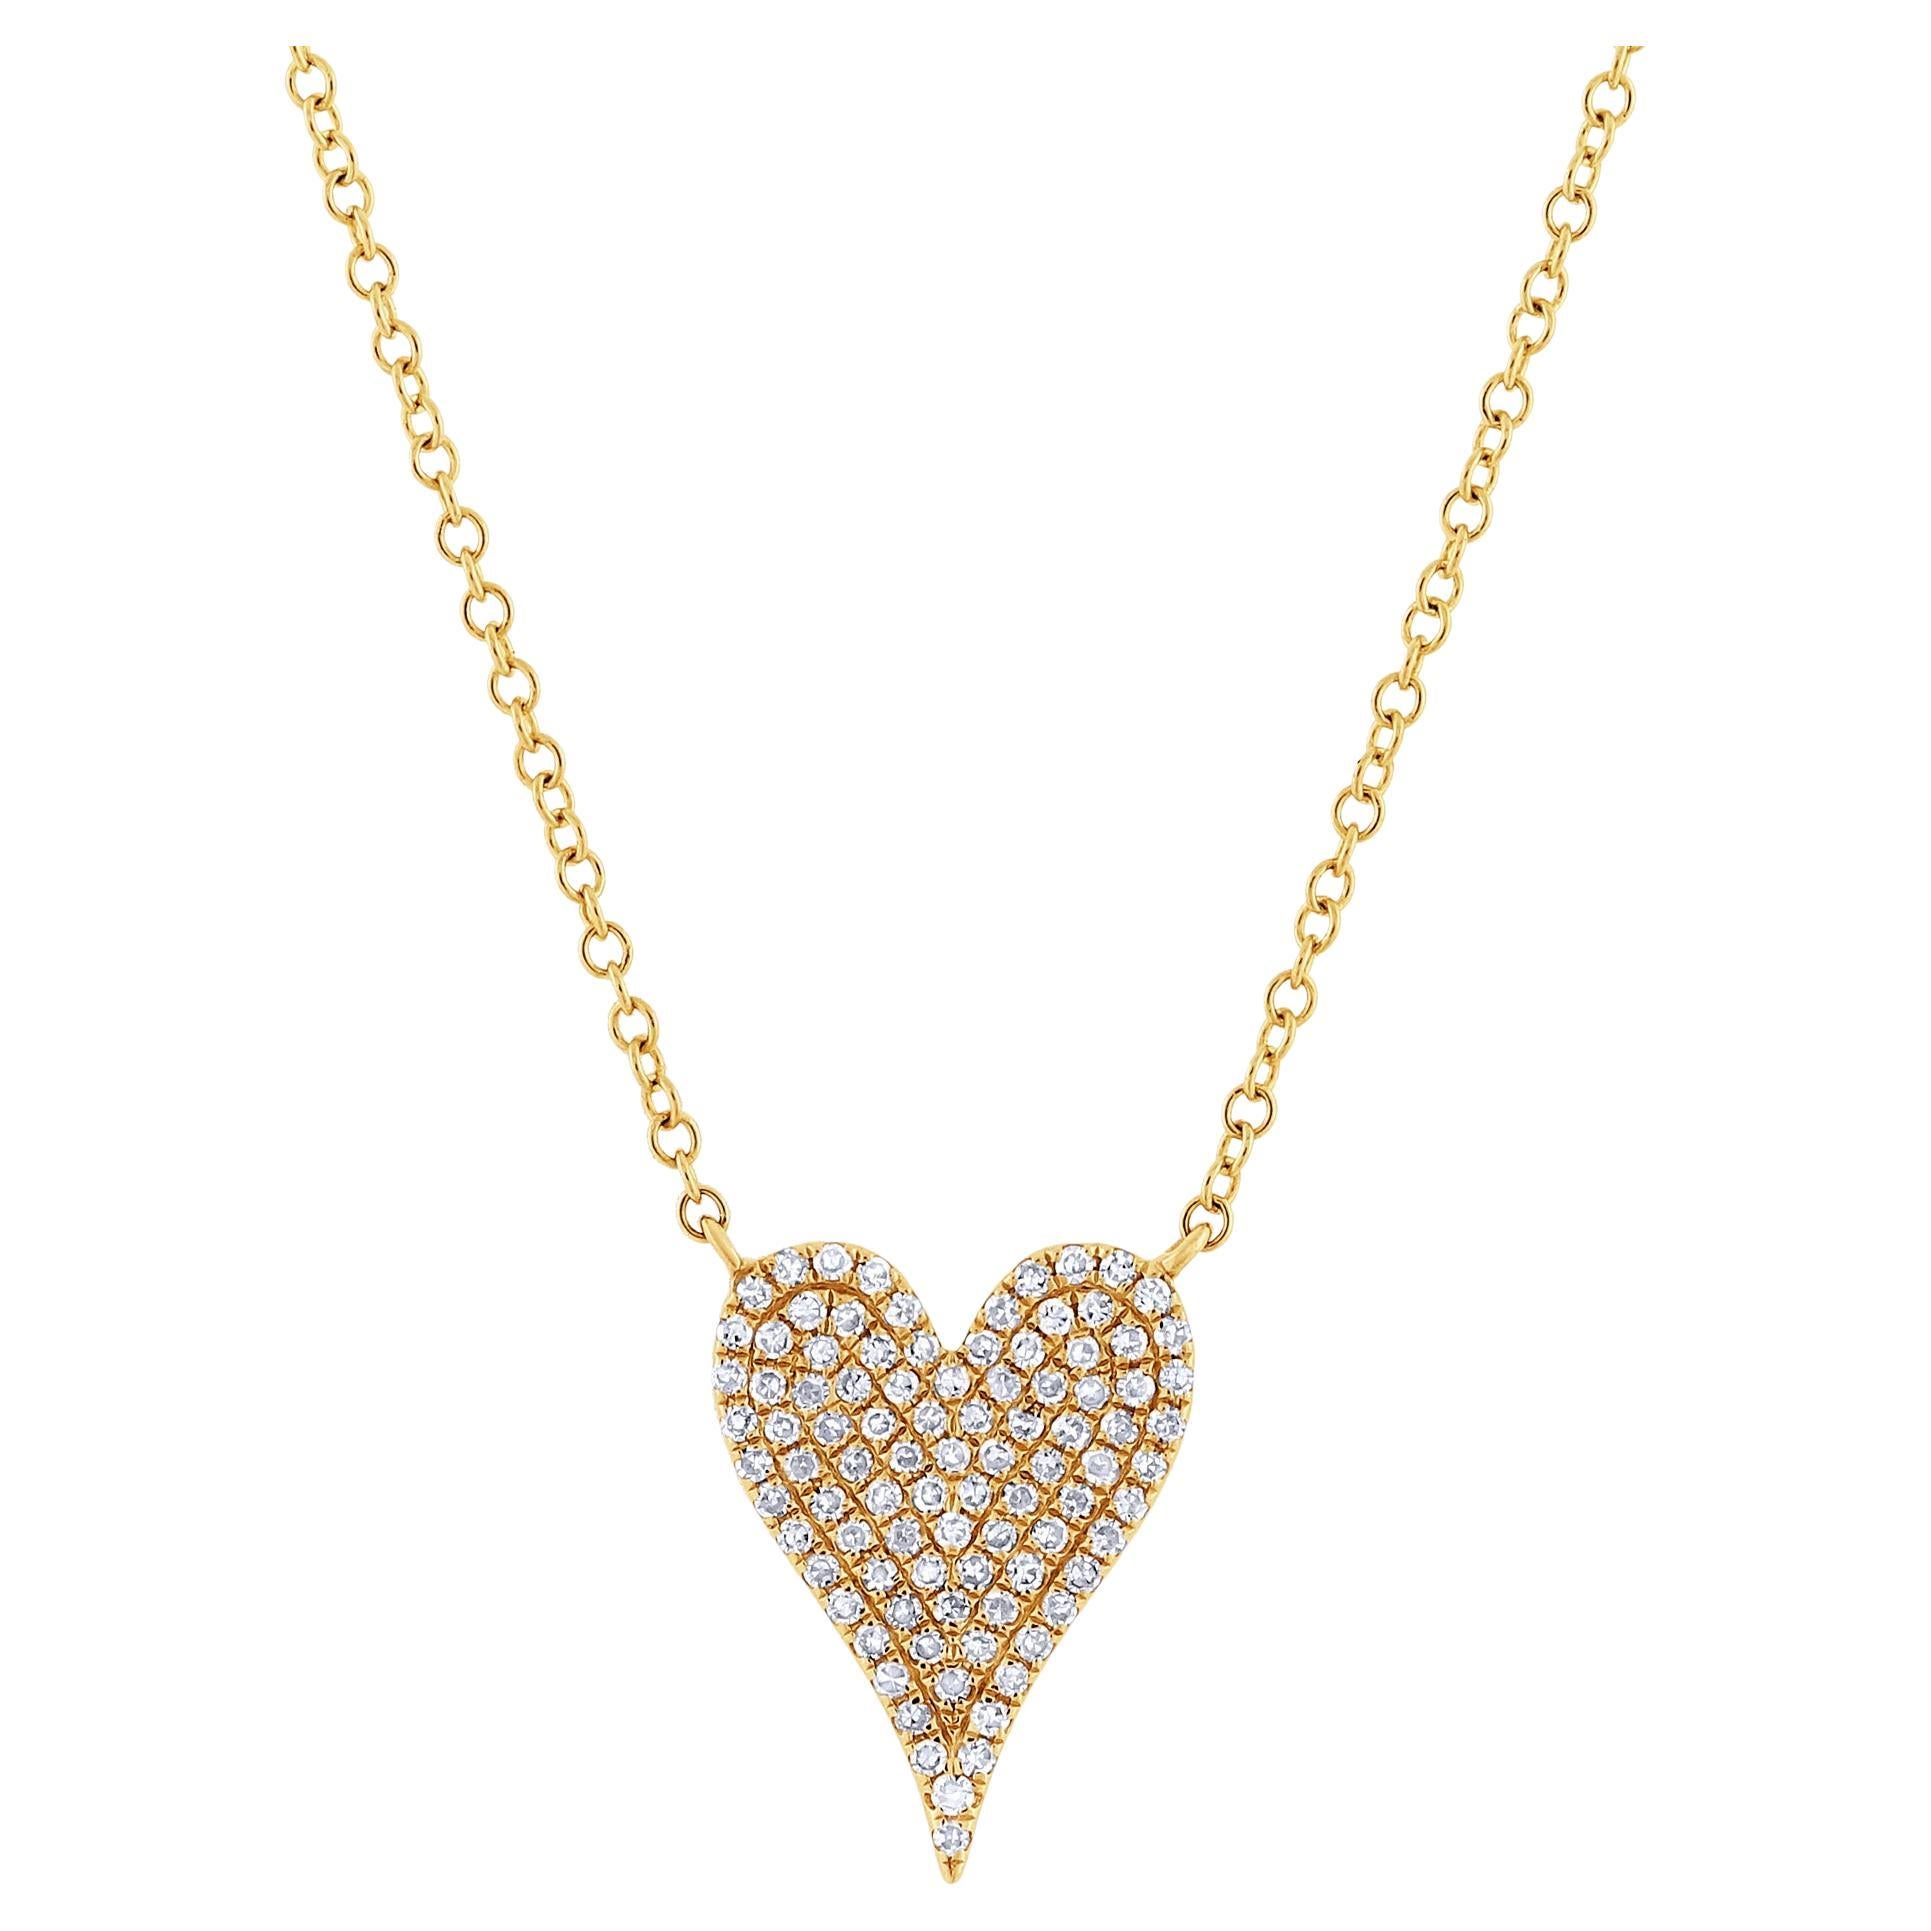 Rachel Koen Collier pendentif cœur en or jaune 14 carats avec diamants pavés 0,21 carat poids total